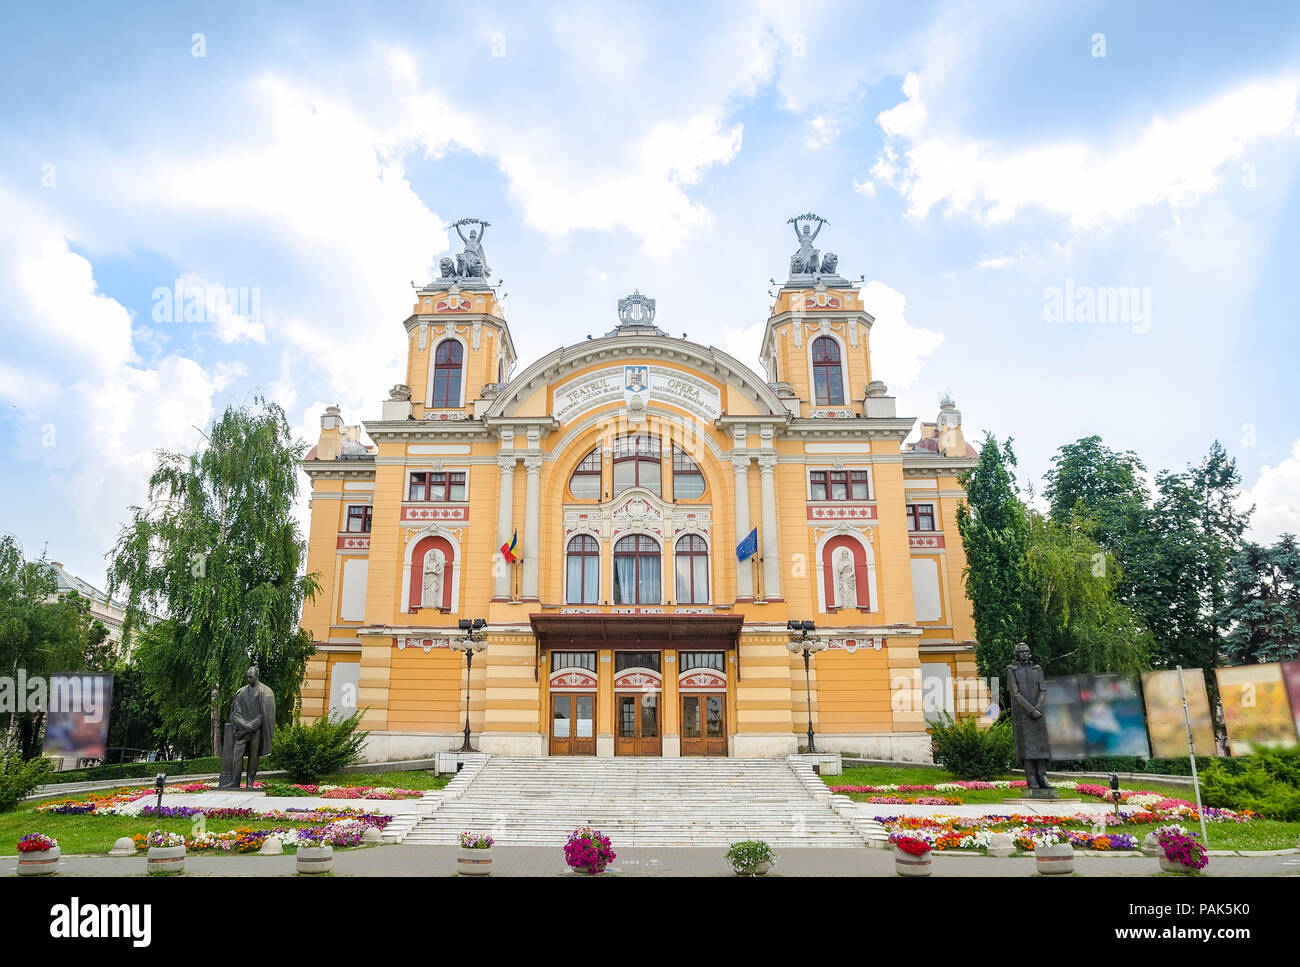 CLUJ-NAPOCA, Rumania - 24 de julio de 2015: Cluj-Napoca Teatro Nacional y la Ópera, en el centro de la ciudad construido en 1906 en un neobarroco architectura Foto de stock